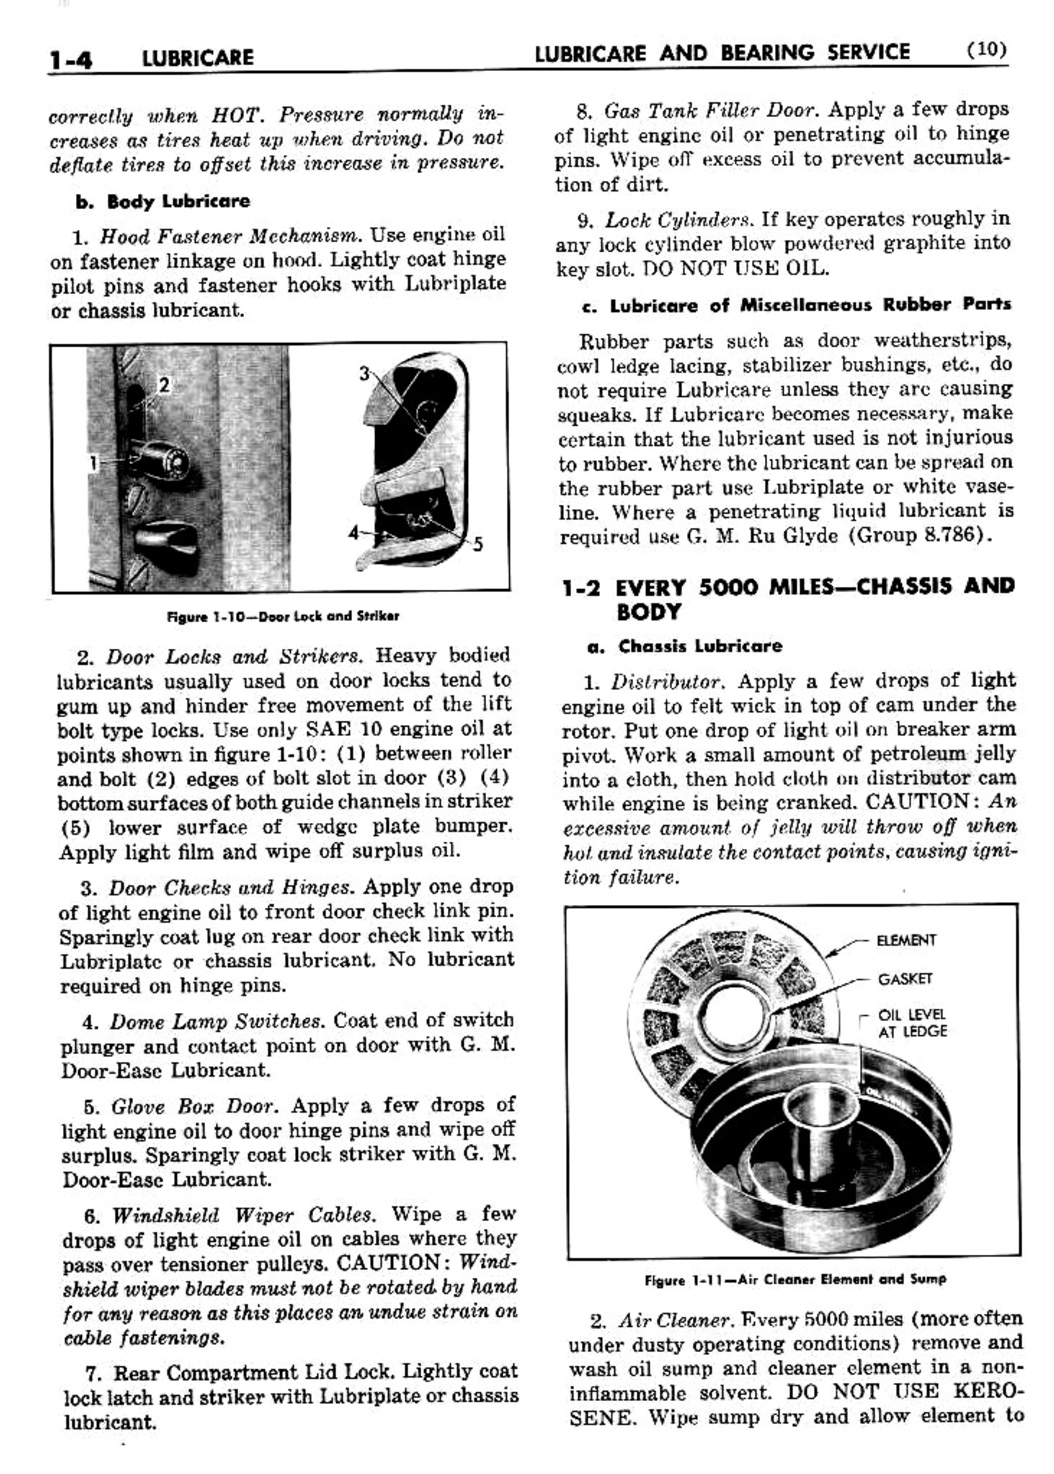 n_02 1950 Buick Shop Manual - Lubricare-004-004.jpg